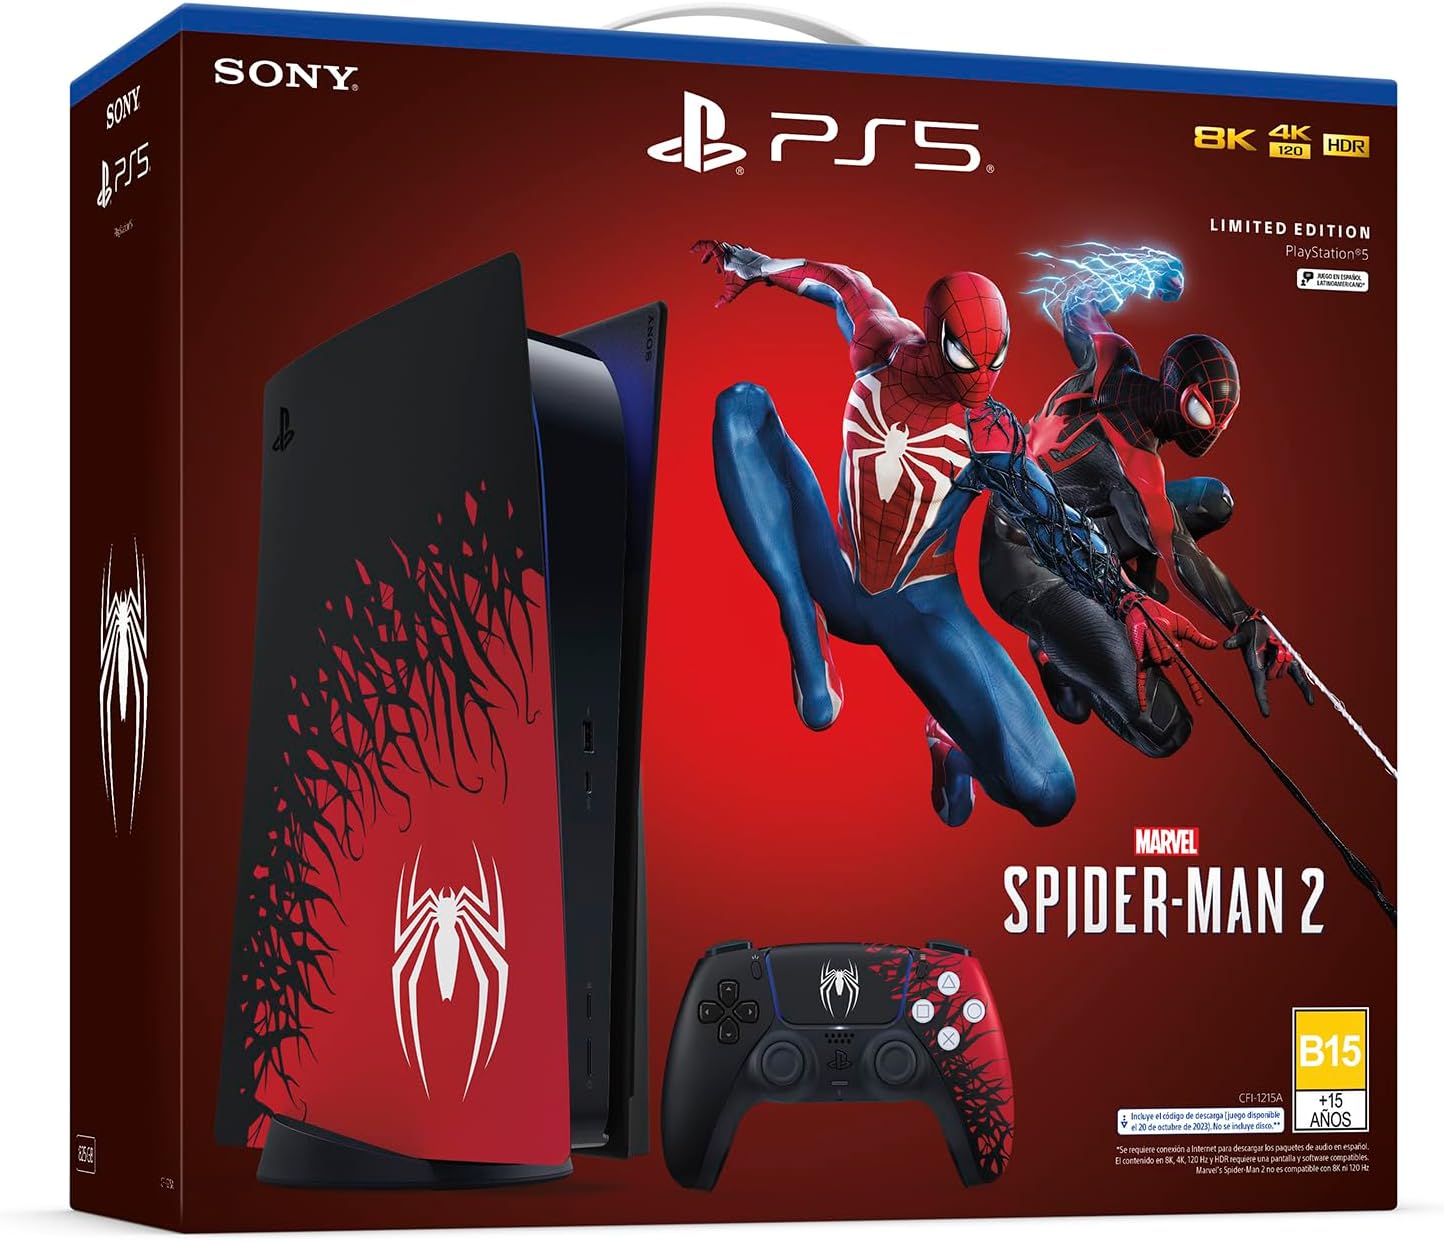 Spider-Man 2 llega a PS5 con una edición especial de la consola